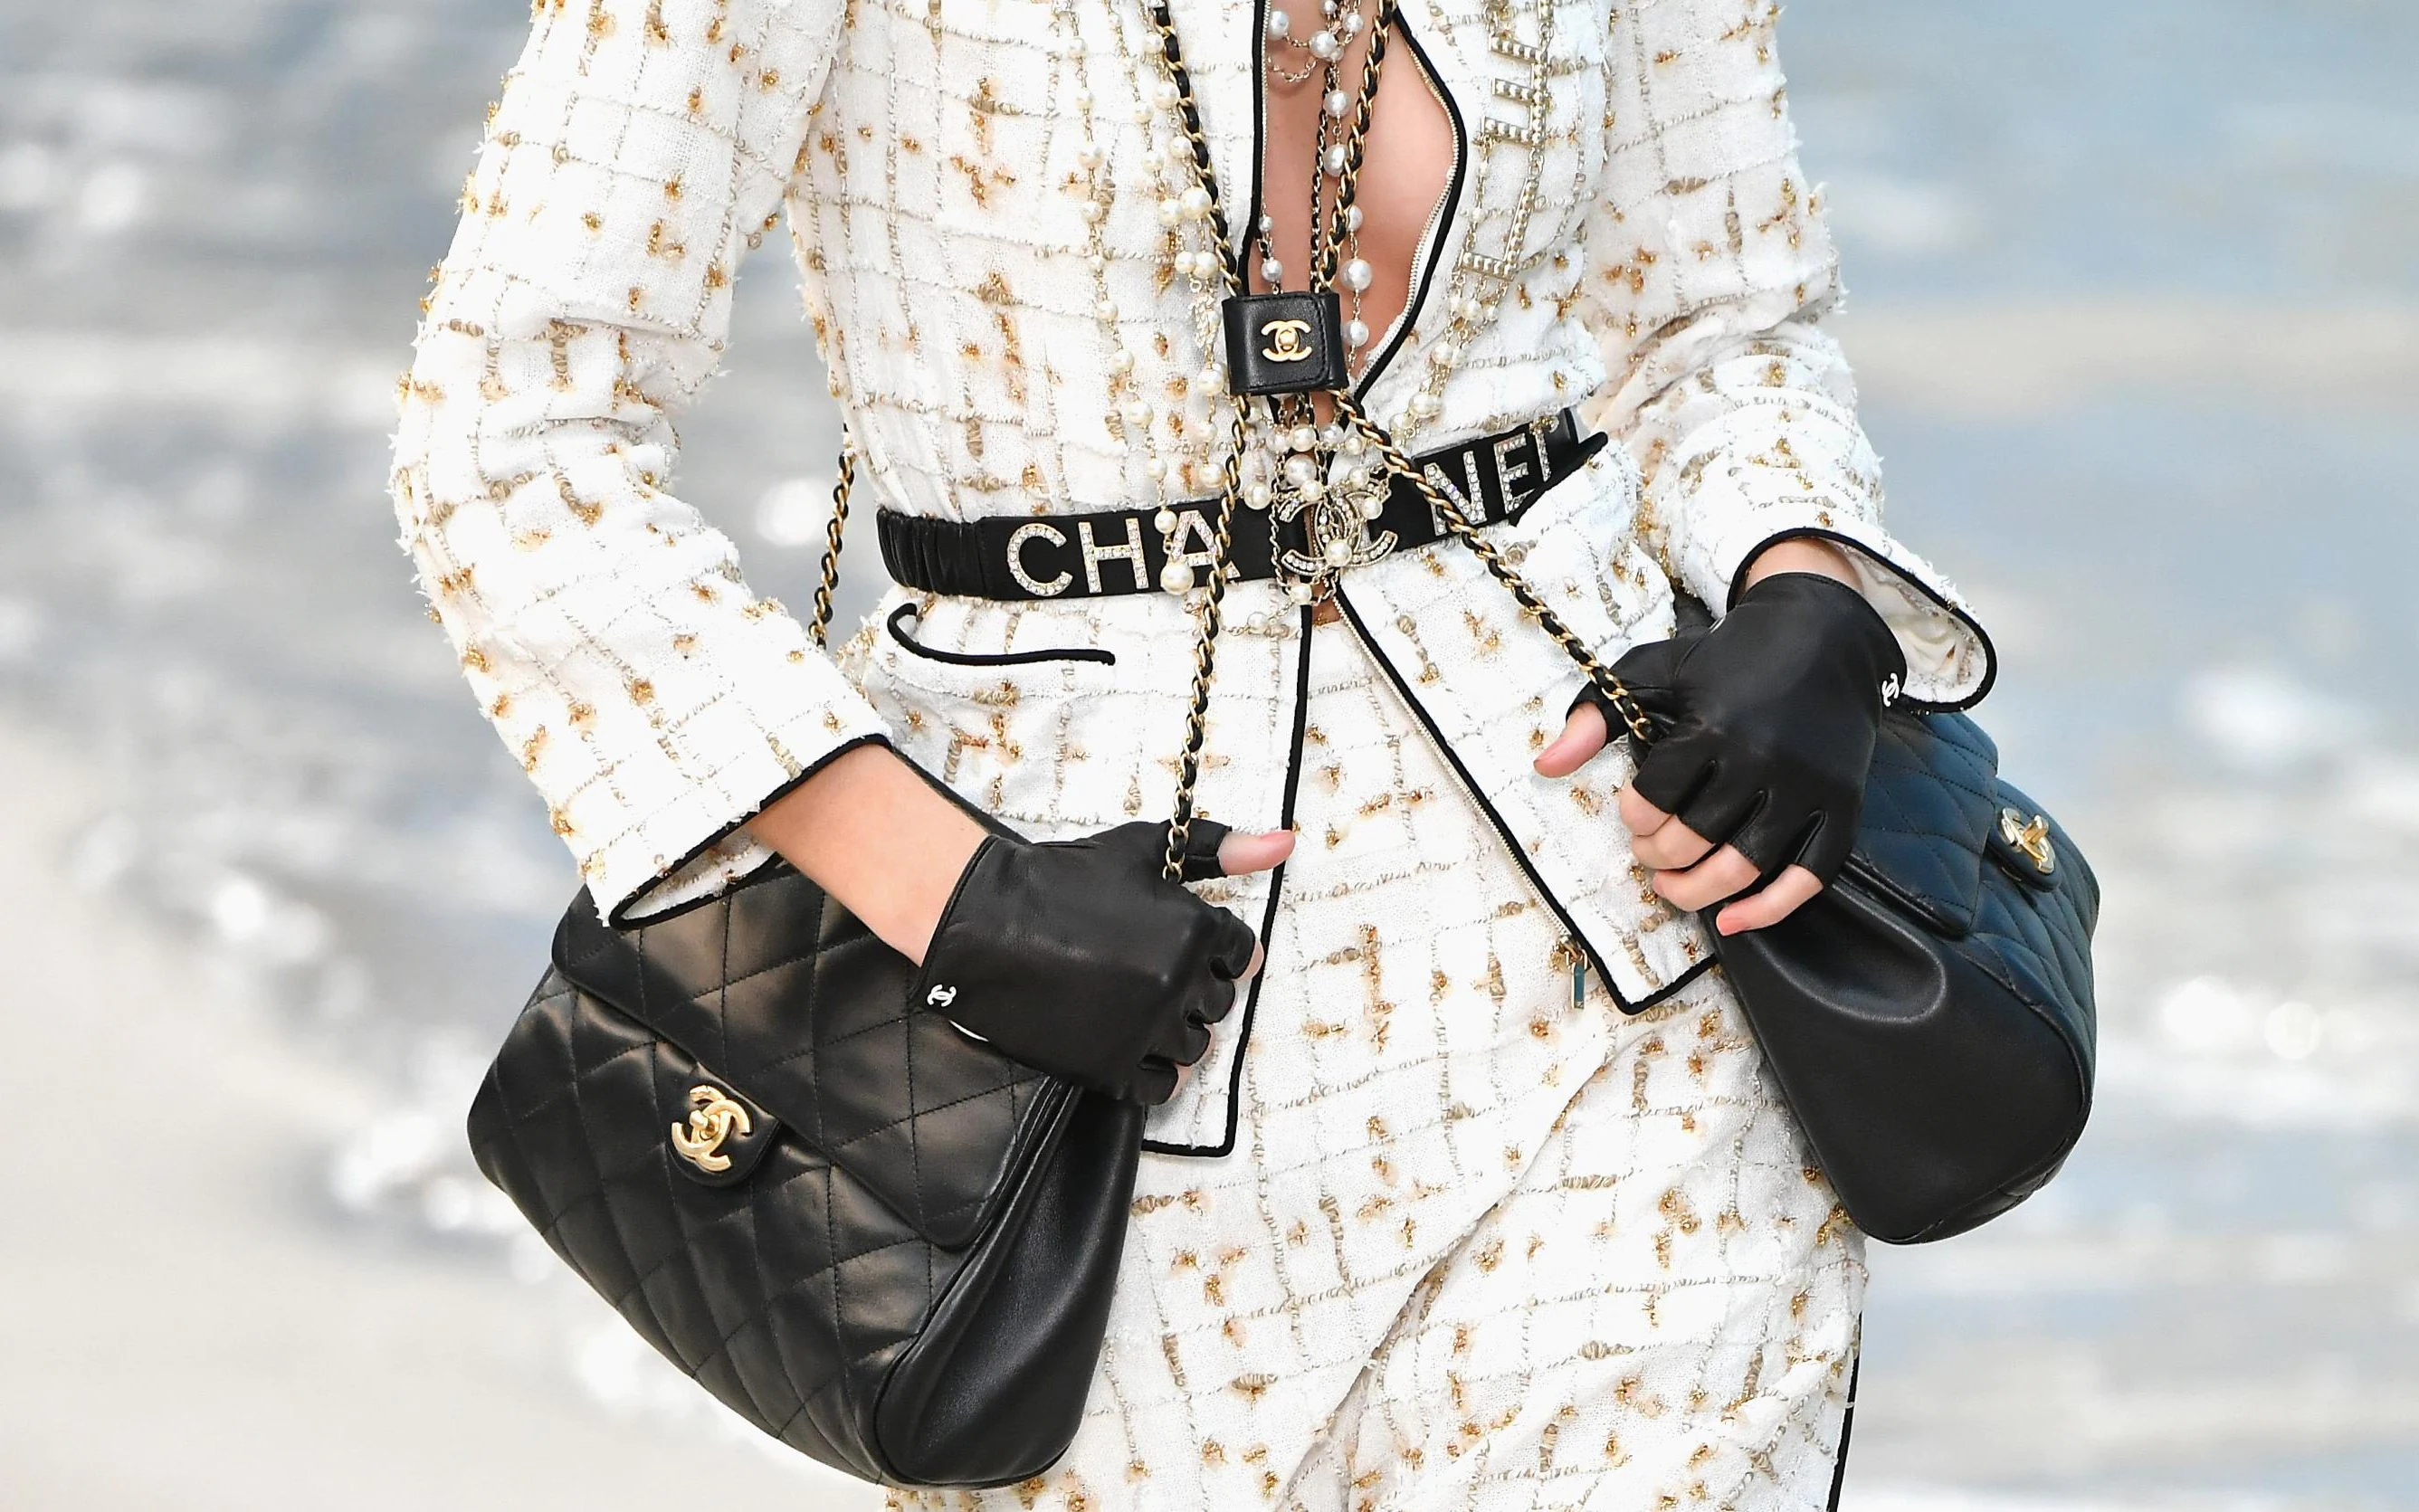 100% Authentic Louis Vuitton Brea MM Epi Ivory handbag shoulder bag